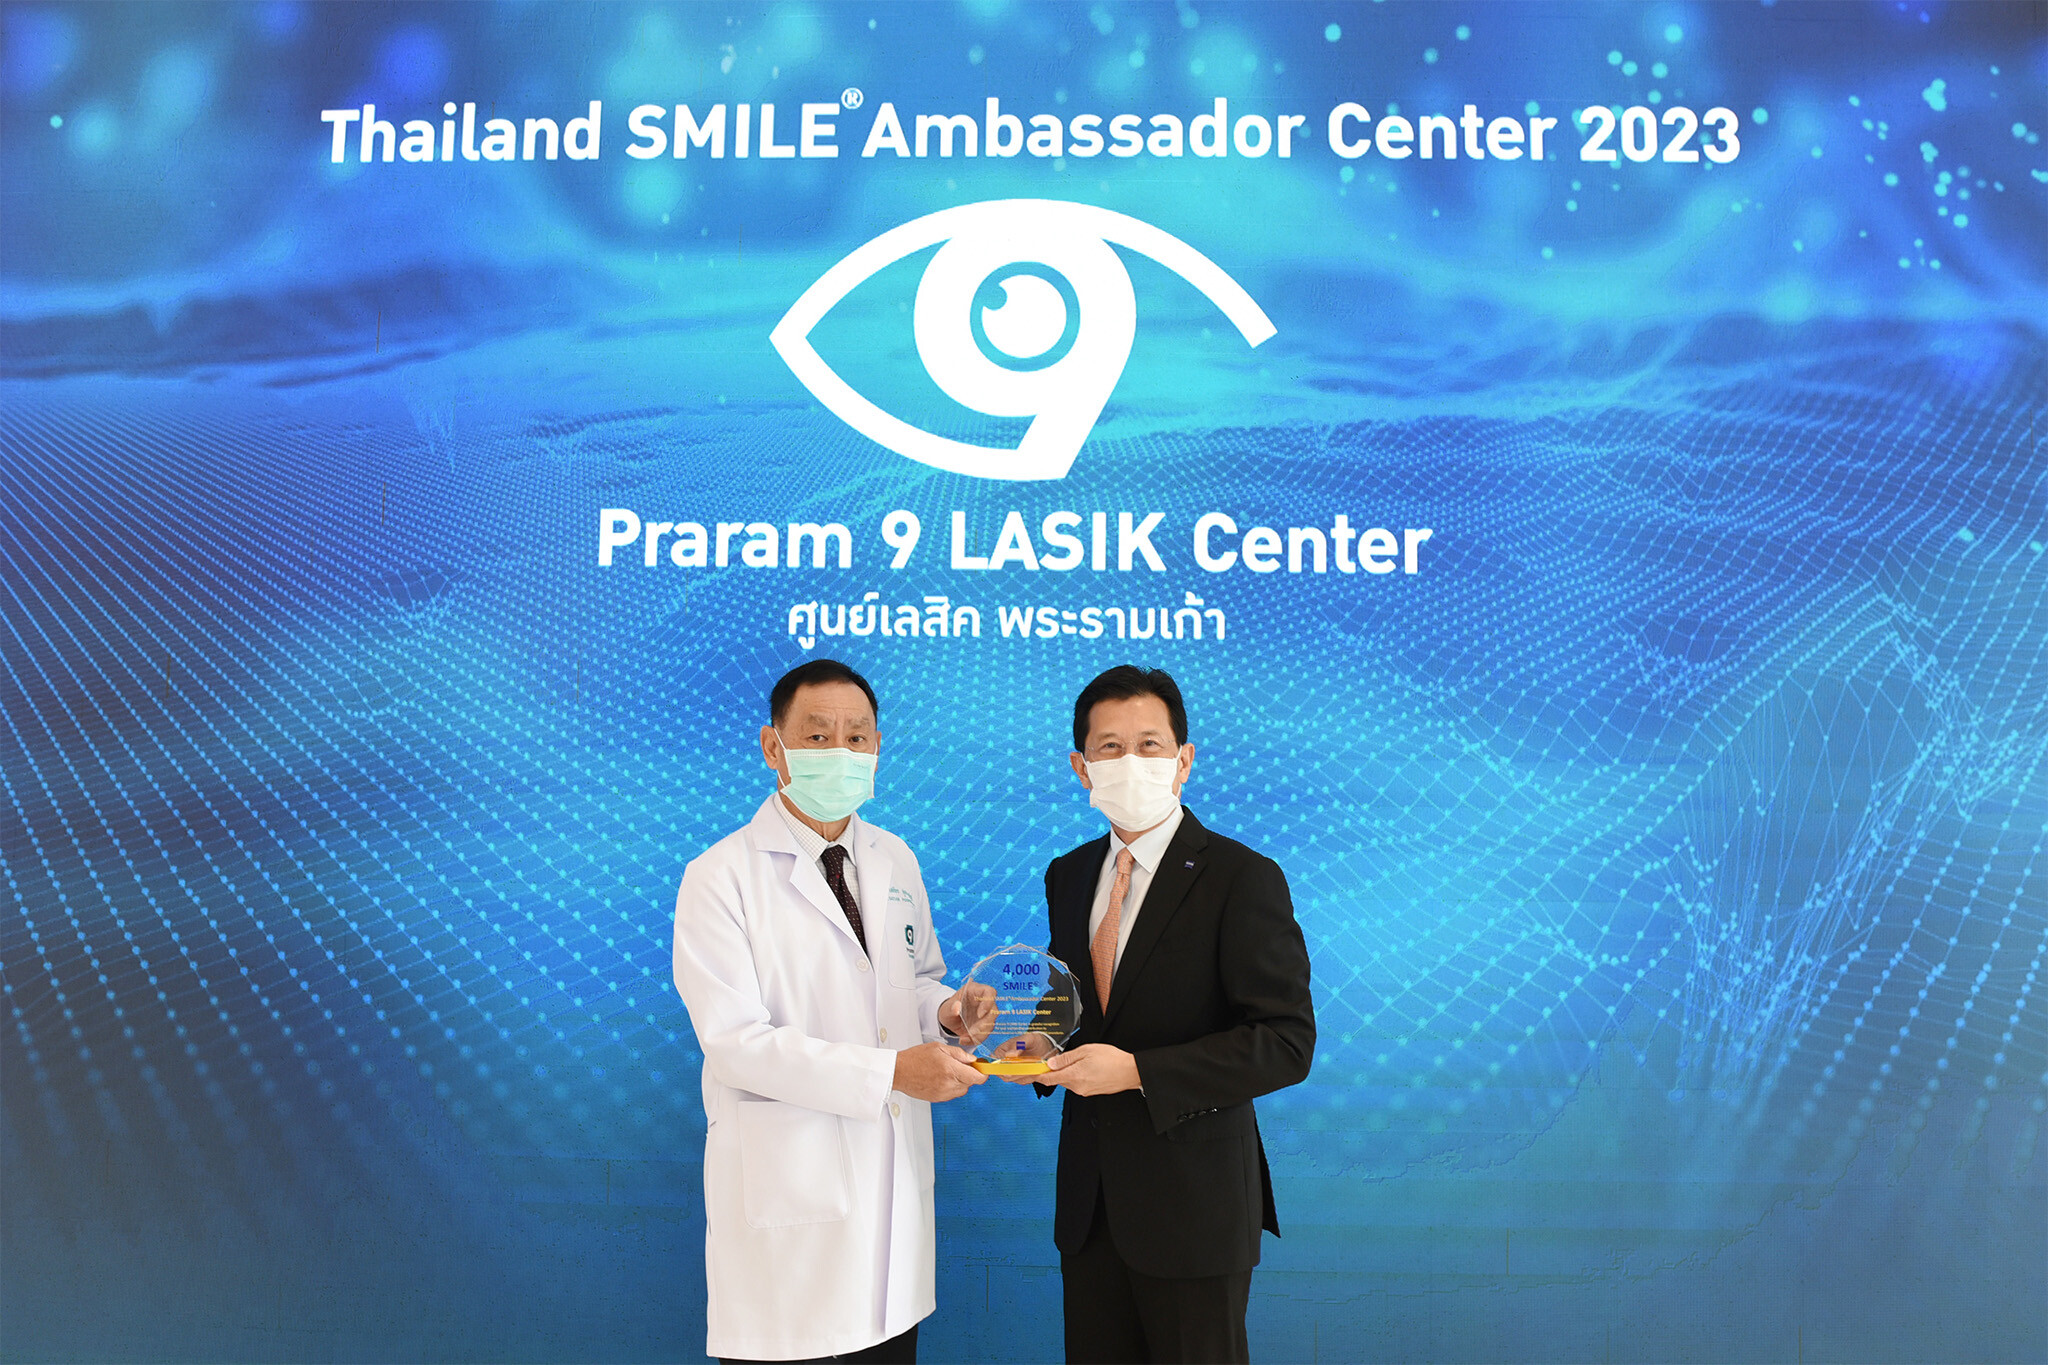 ศูนย์ Praram 9 LASIK Center รพ.พระรามเก้า รับรางวัล SMILE(R) Ambassador Center 2023 รักษาสายตาด้วยเทคโนโลยี ReLEx SMILE มากที่สุด